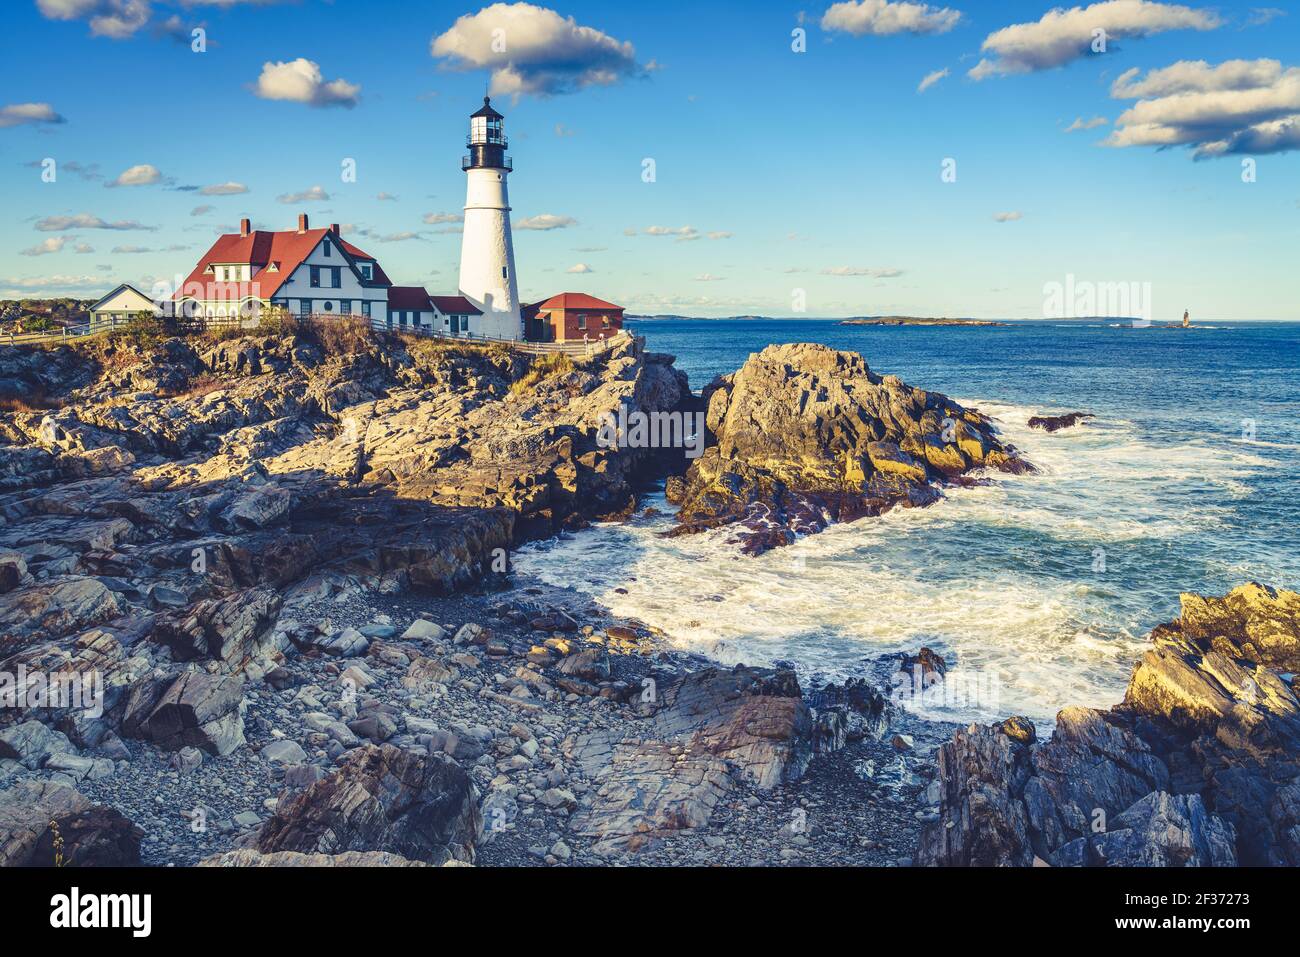 Scenic view of the historic Portland Head Light in Cape Elizabeth, Maine Stock Photo